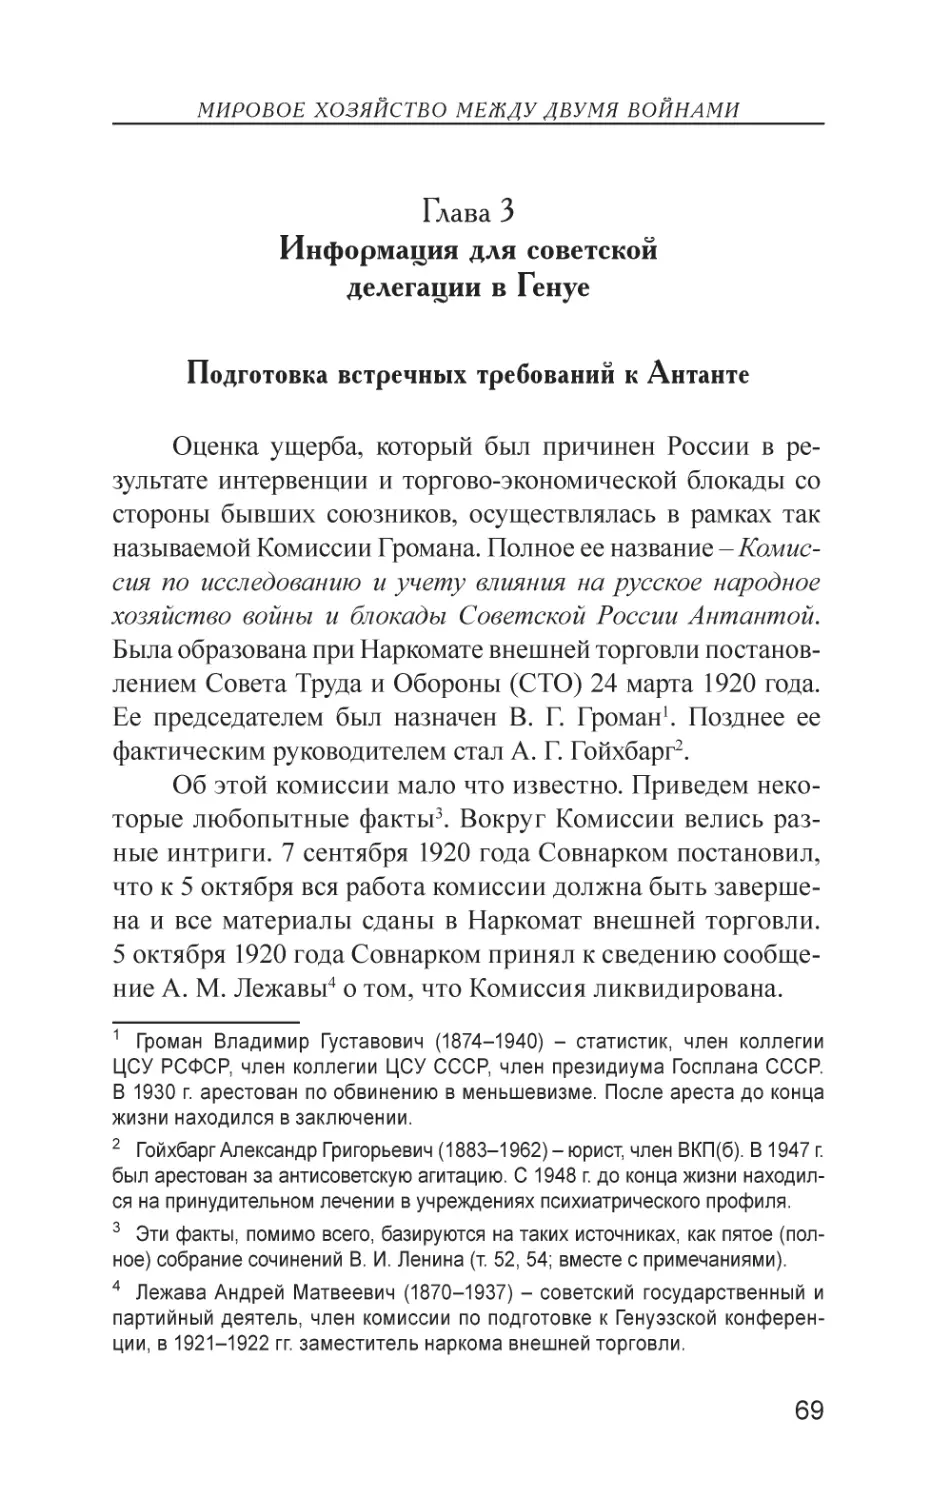 Глава 3. Информация для советской делегации в Генуе
Подготовка встречных требований к Антанте